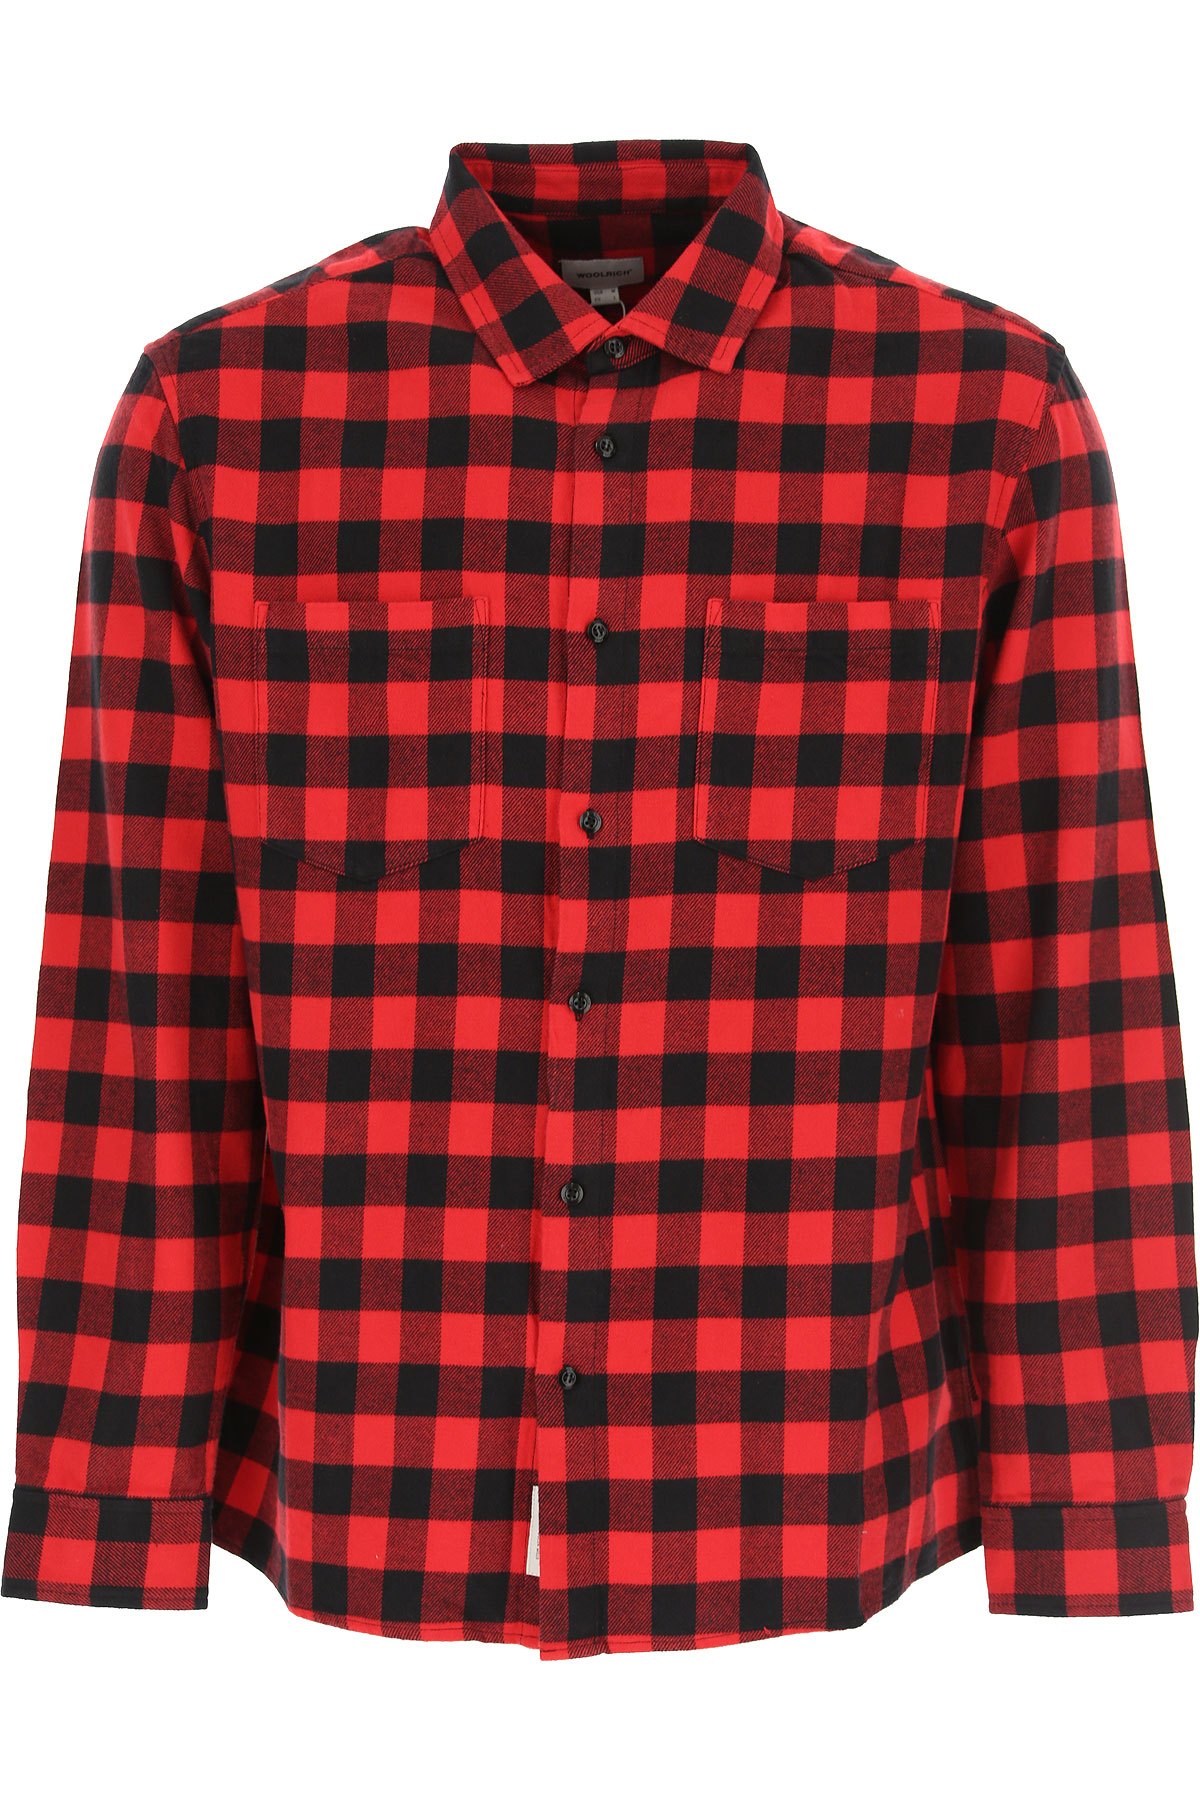 Woolrich Hemde für Herren, Oberhemd Günstig im Sale, Rot, Baumwolle, 2017, L M XL